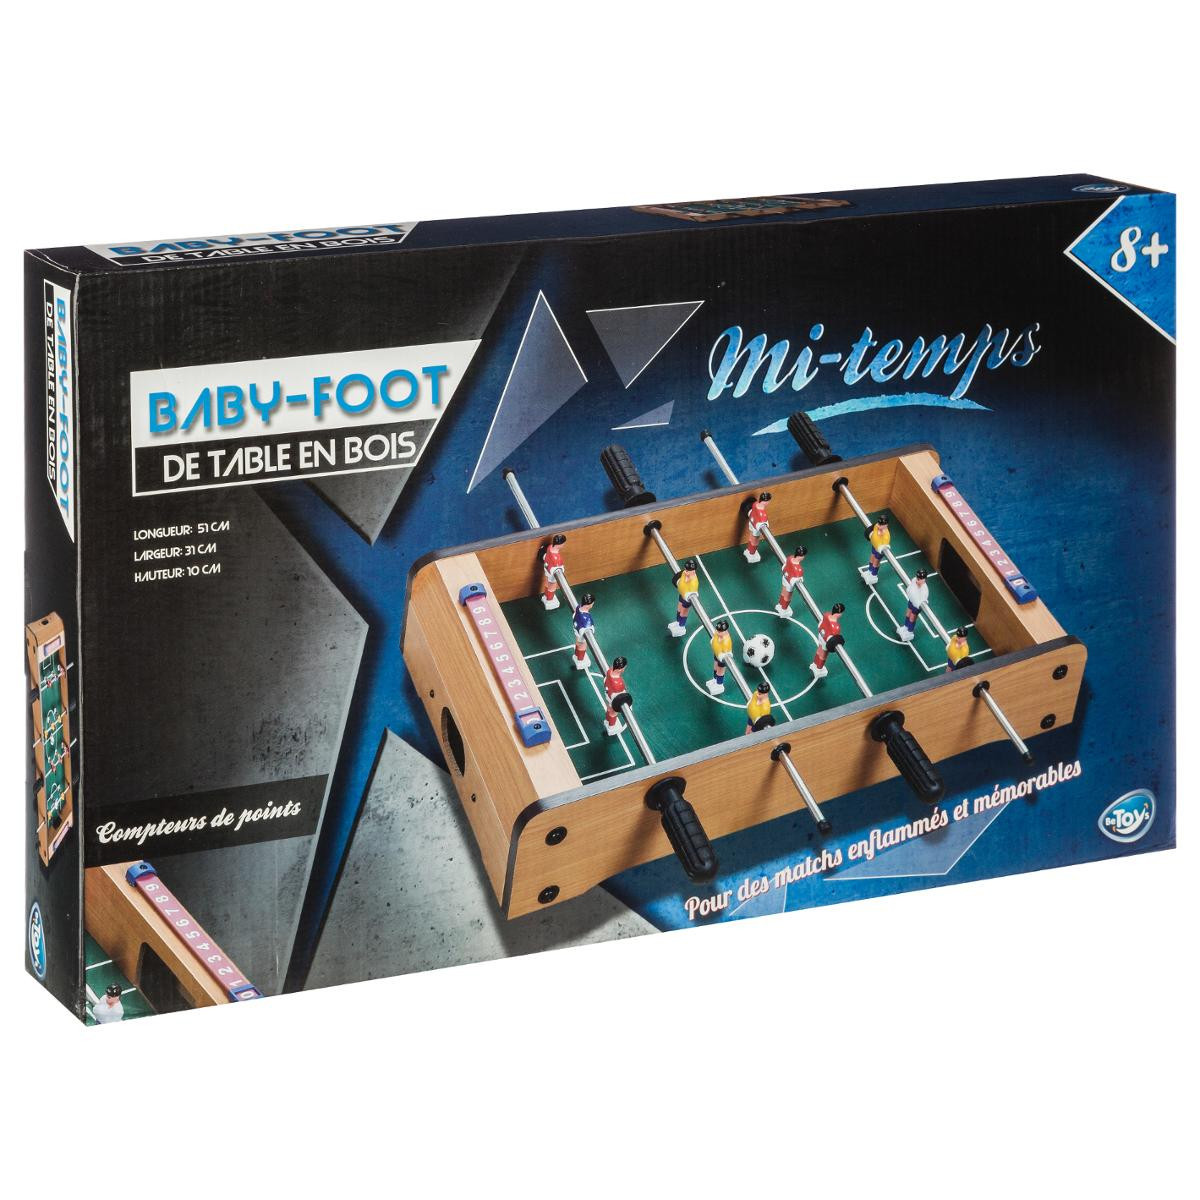 Mini jeu de table baby foot en bois - 51CM X 31CM